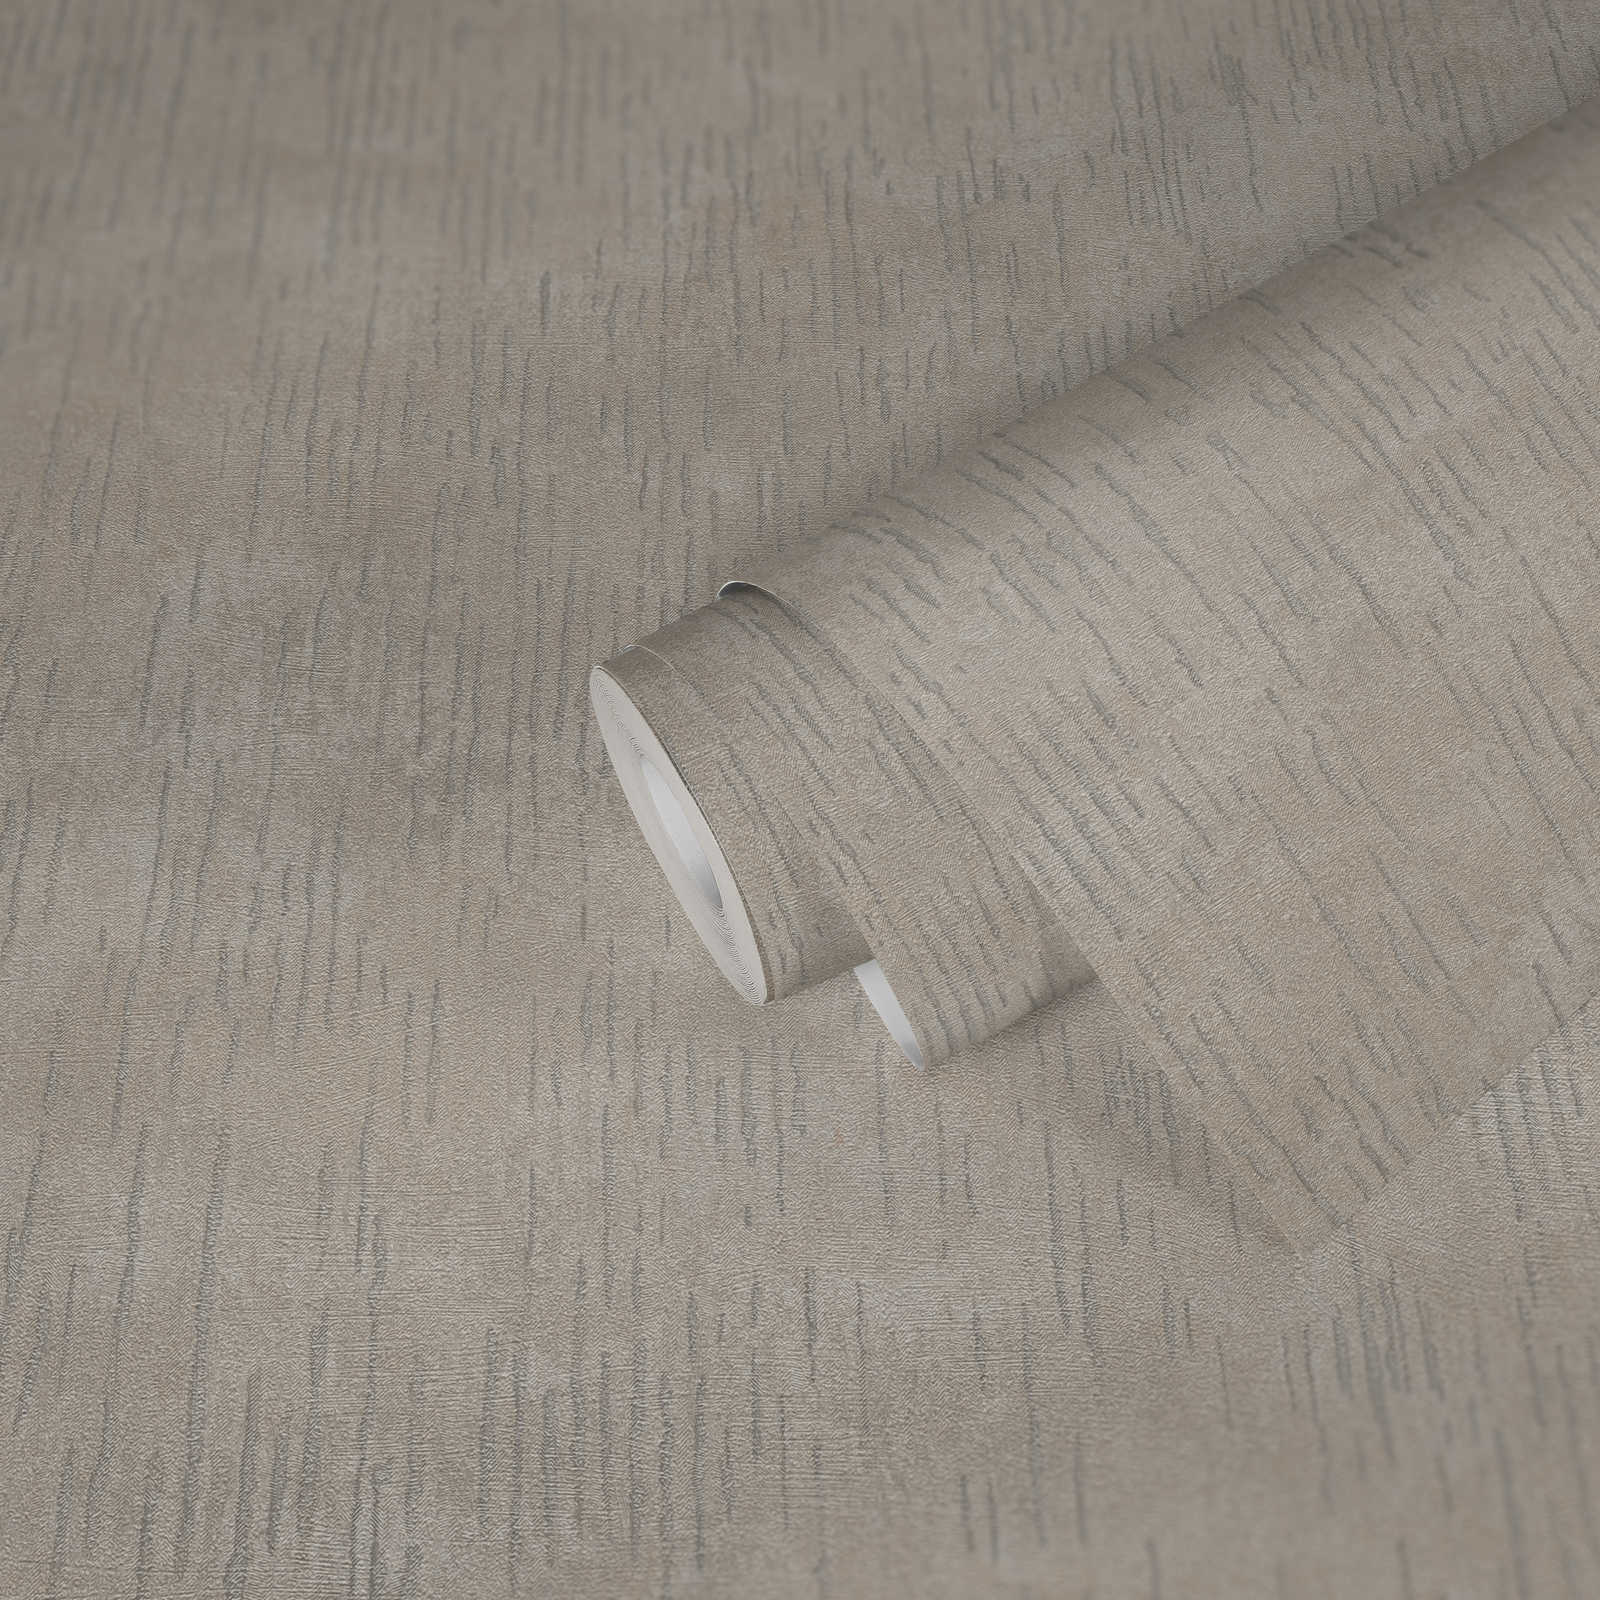             Glänzende Struktur-Tapete mit Metallic Muster – Beige, Metallic
        